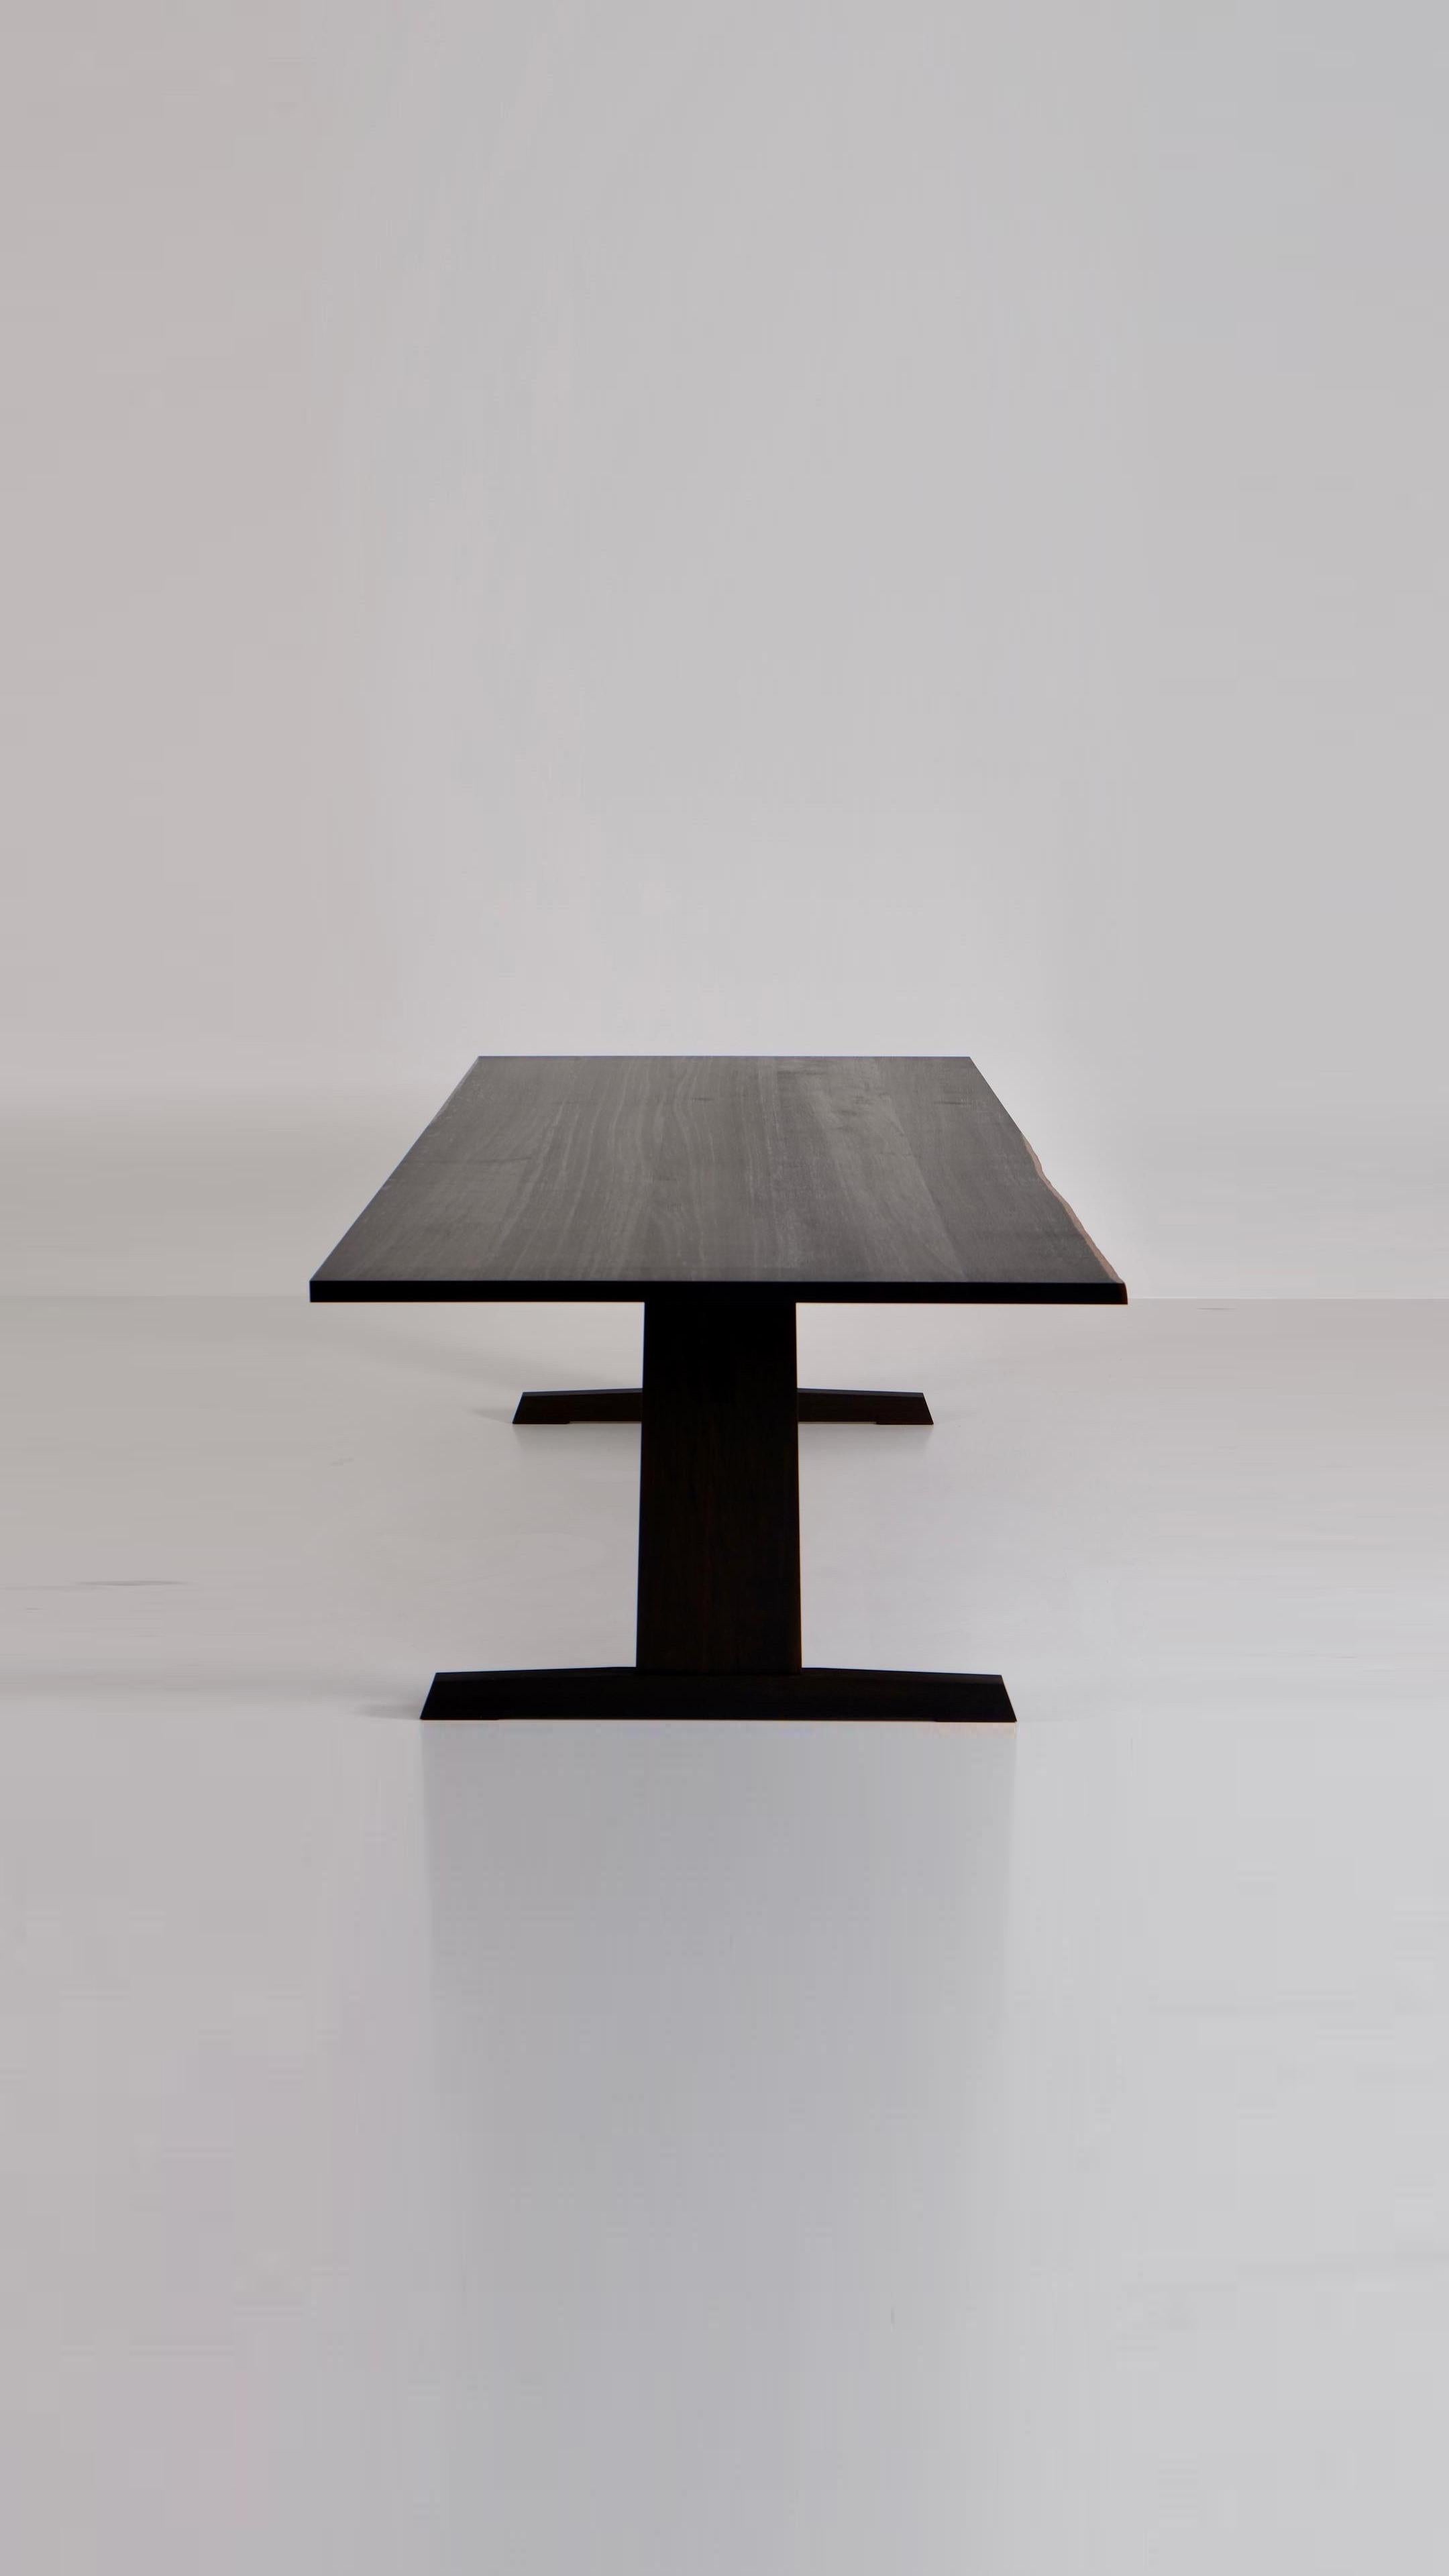 
ChatGPT
ChatGPT
Der Smoked Oak Dining Table ist eine moderne Interpretation des klassischen Esstisches aus Massivholz. Ganz ohne Schrauben konstruiert, zelebriert sein Design die dem Material innewohnende Schönheit - mit sichtbaren Ästen und unter